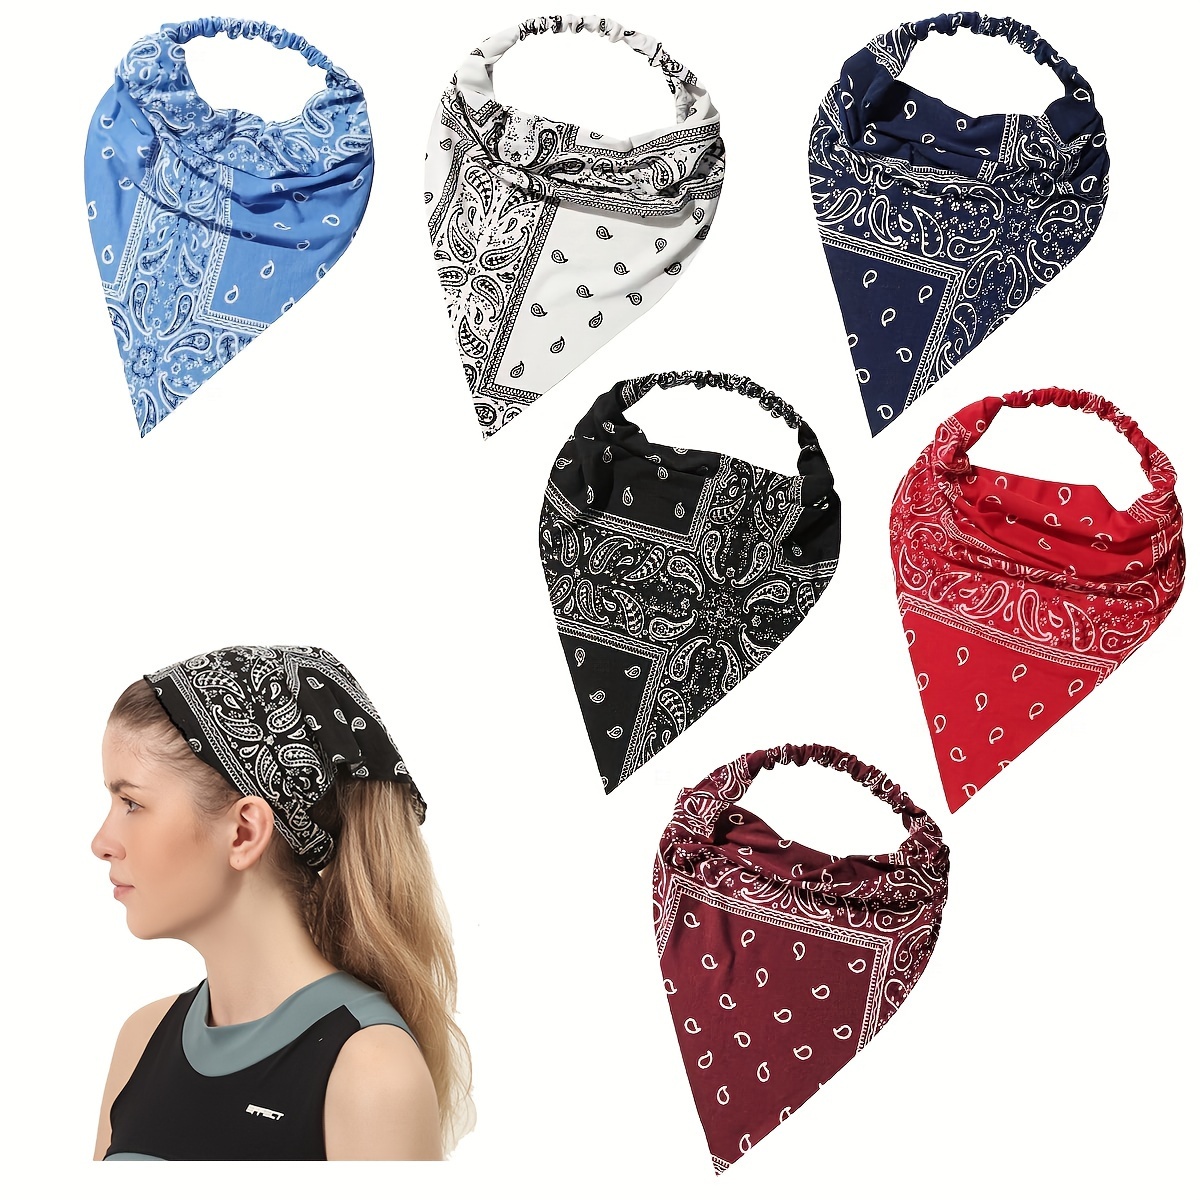 

6pcs Boho Paisley Print Triangle Scarf Headband - Elastic Turban For Women - Stylish Bandana Head Wrap Kerchief Accessory